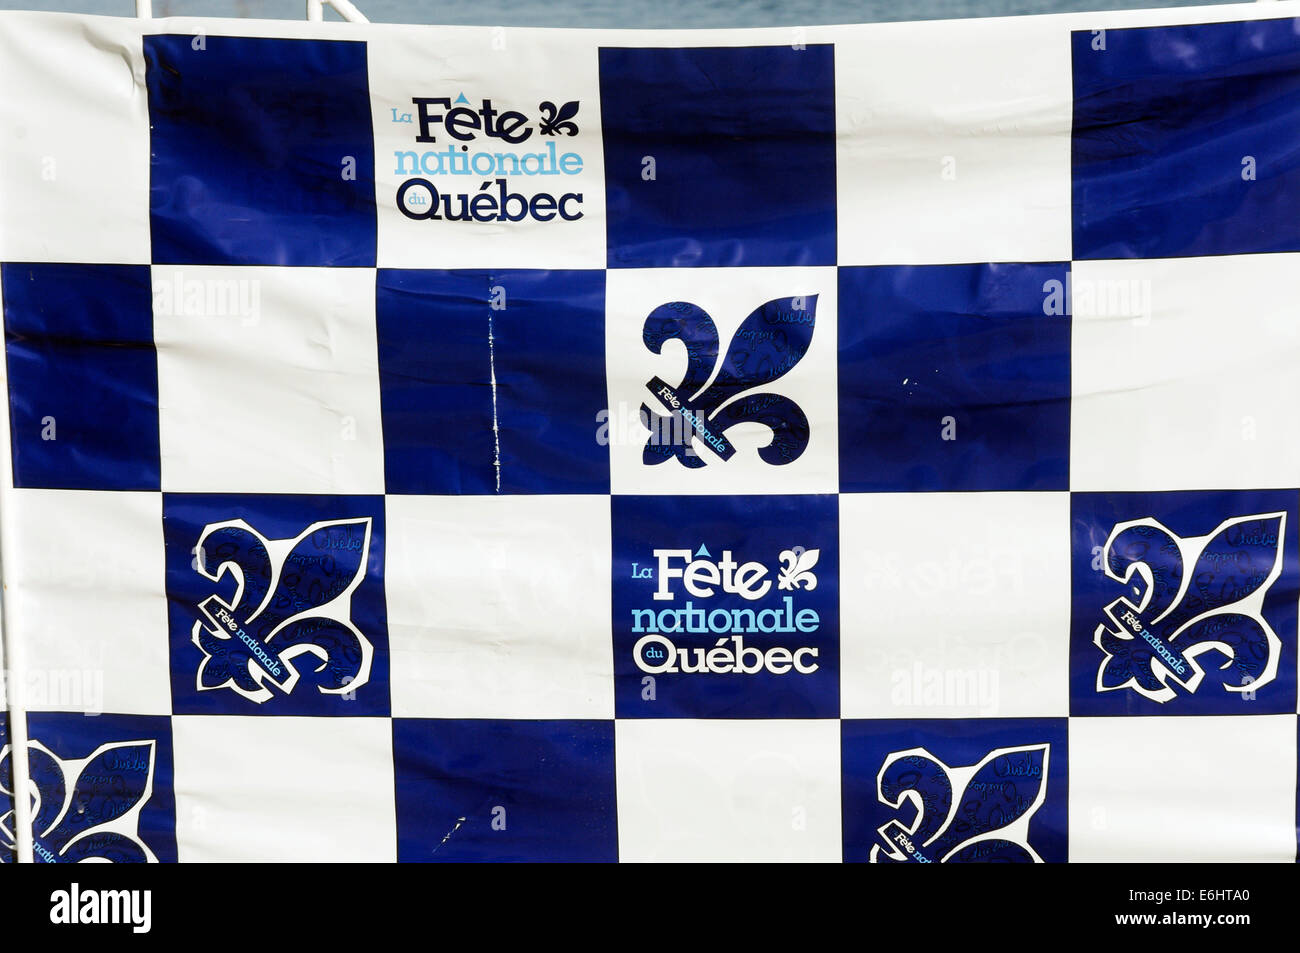 Eine chequed Fahne, Quebec Nationalfeiertag, am 24. Juni zu feiern (auch St Jean) Stockfoto